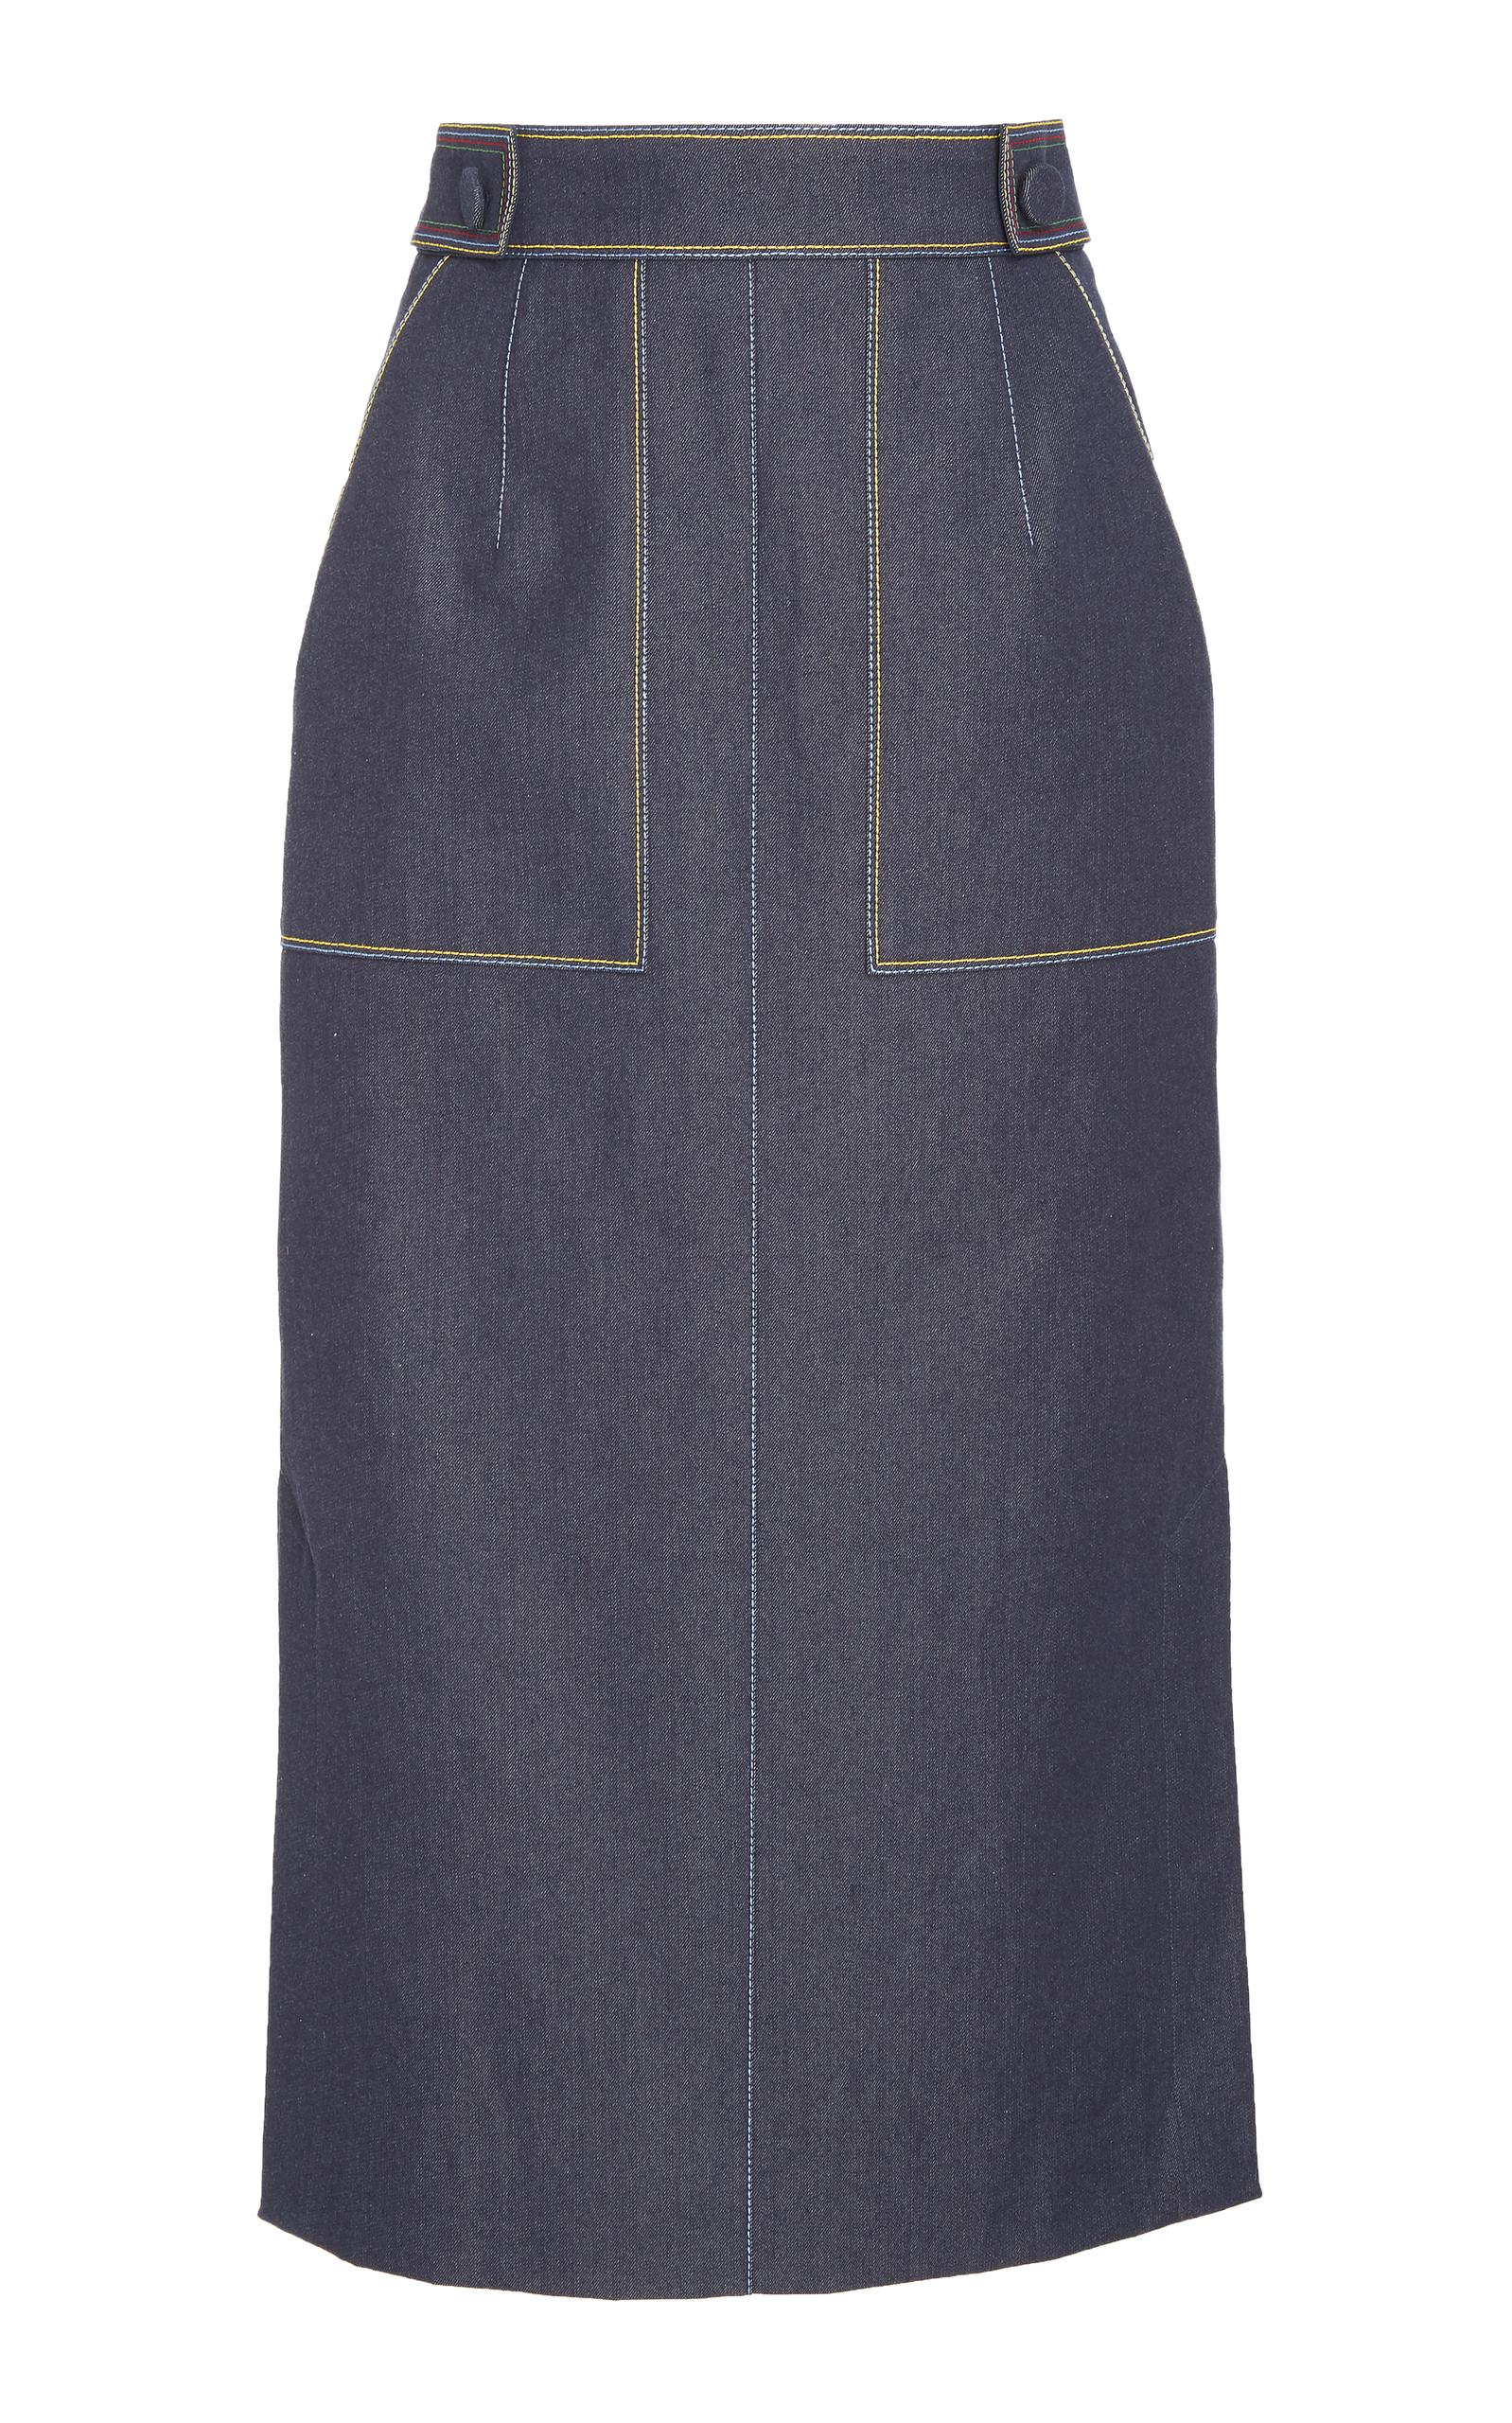 Carolina Herrera Pencil Skirt With Pockets In Navy | ModeSens